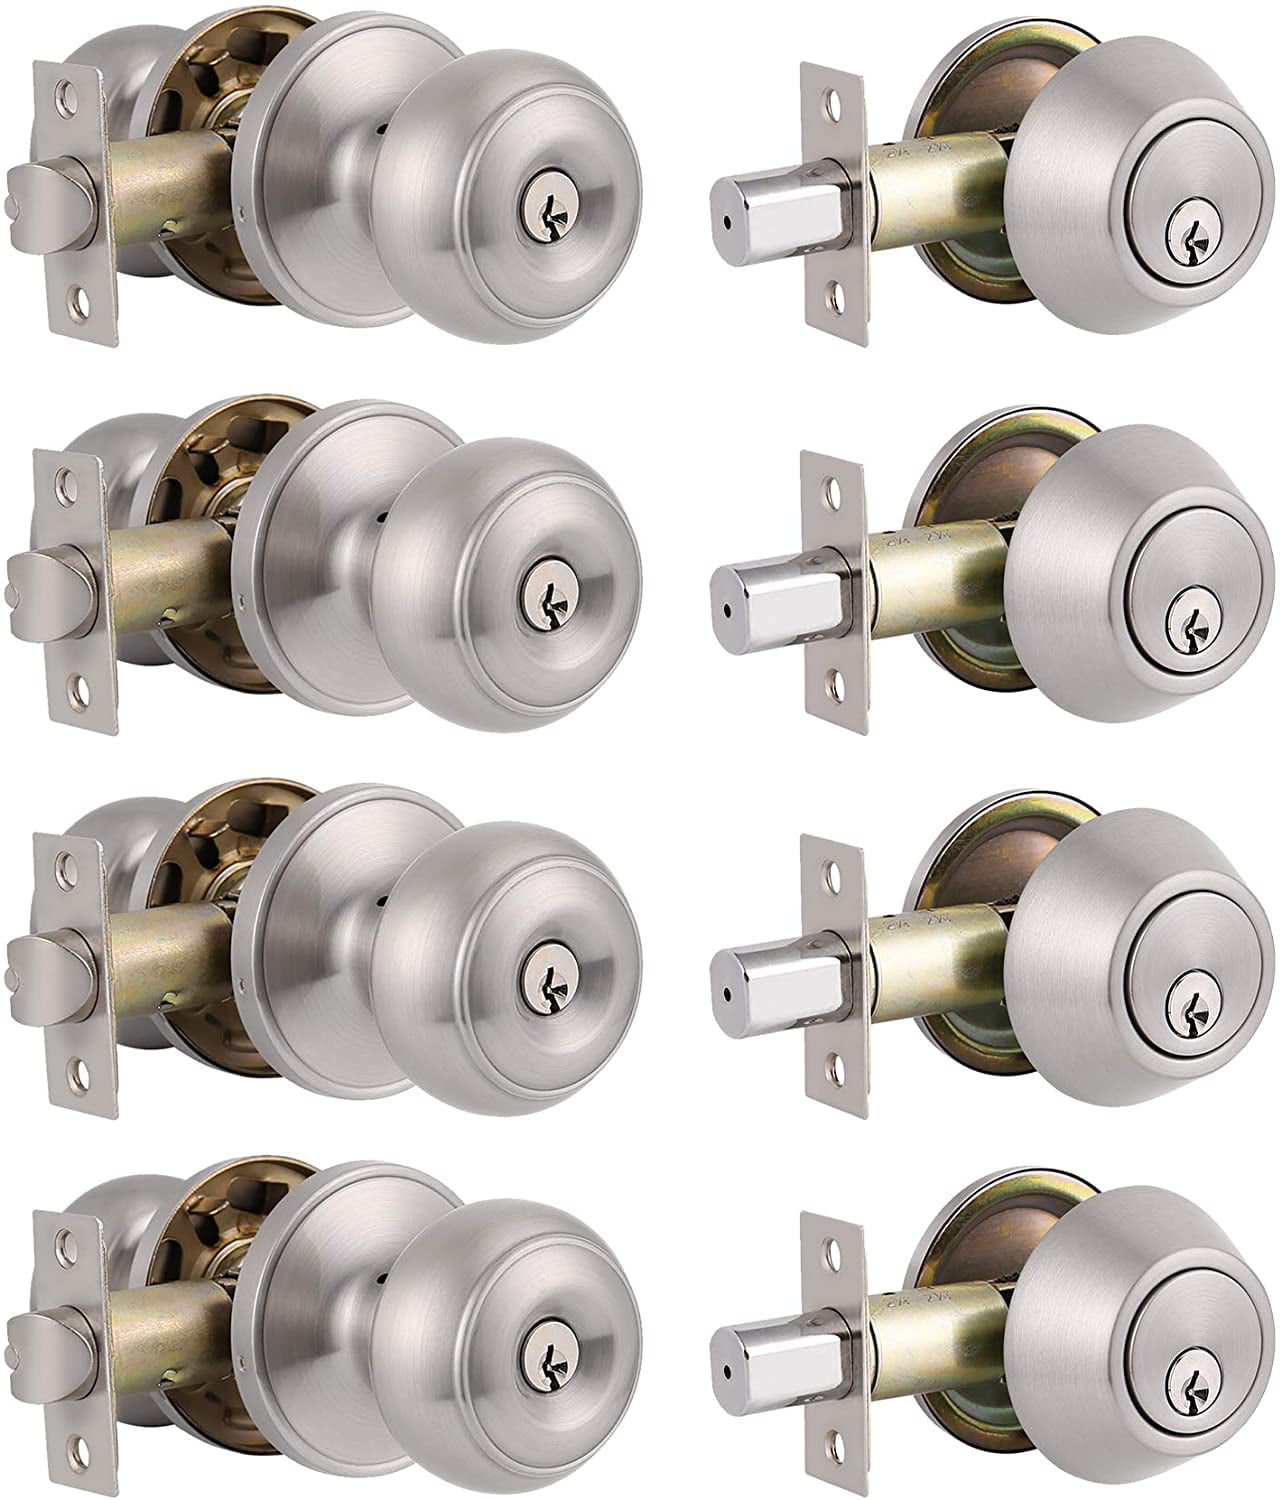 2 PACK Satin Nickel Deadbolt Single Cylinder Entry Lock Keyed Alike & 4 Keys 